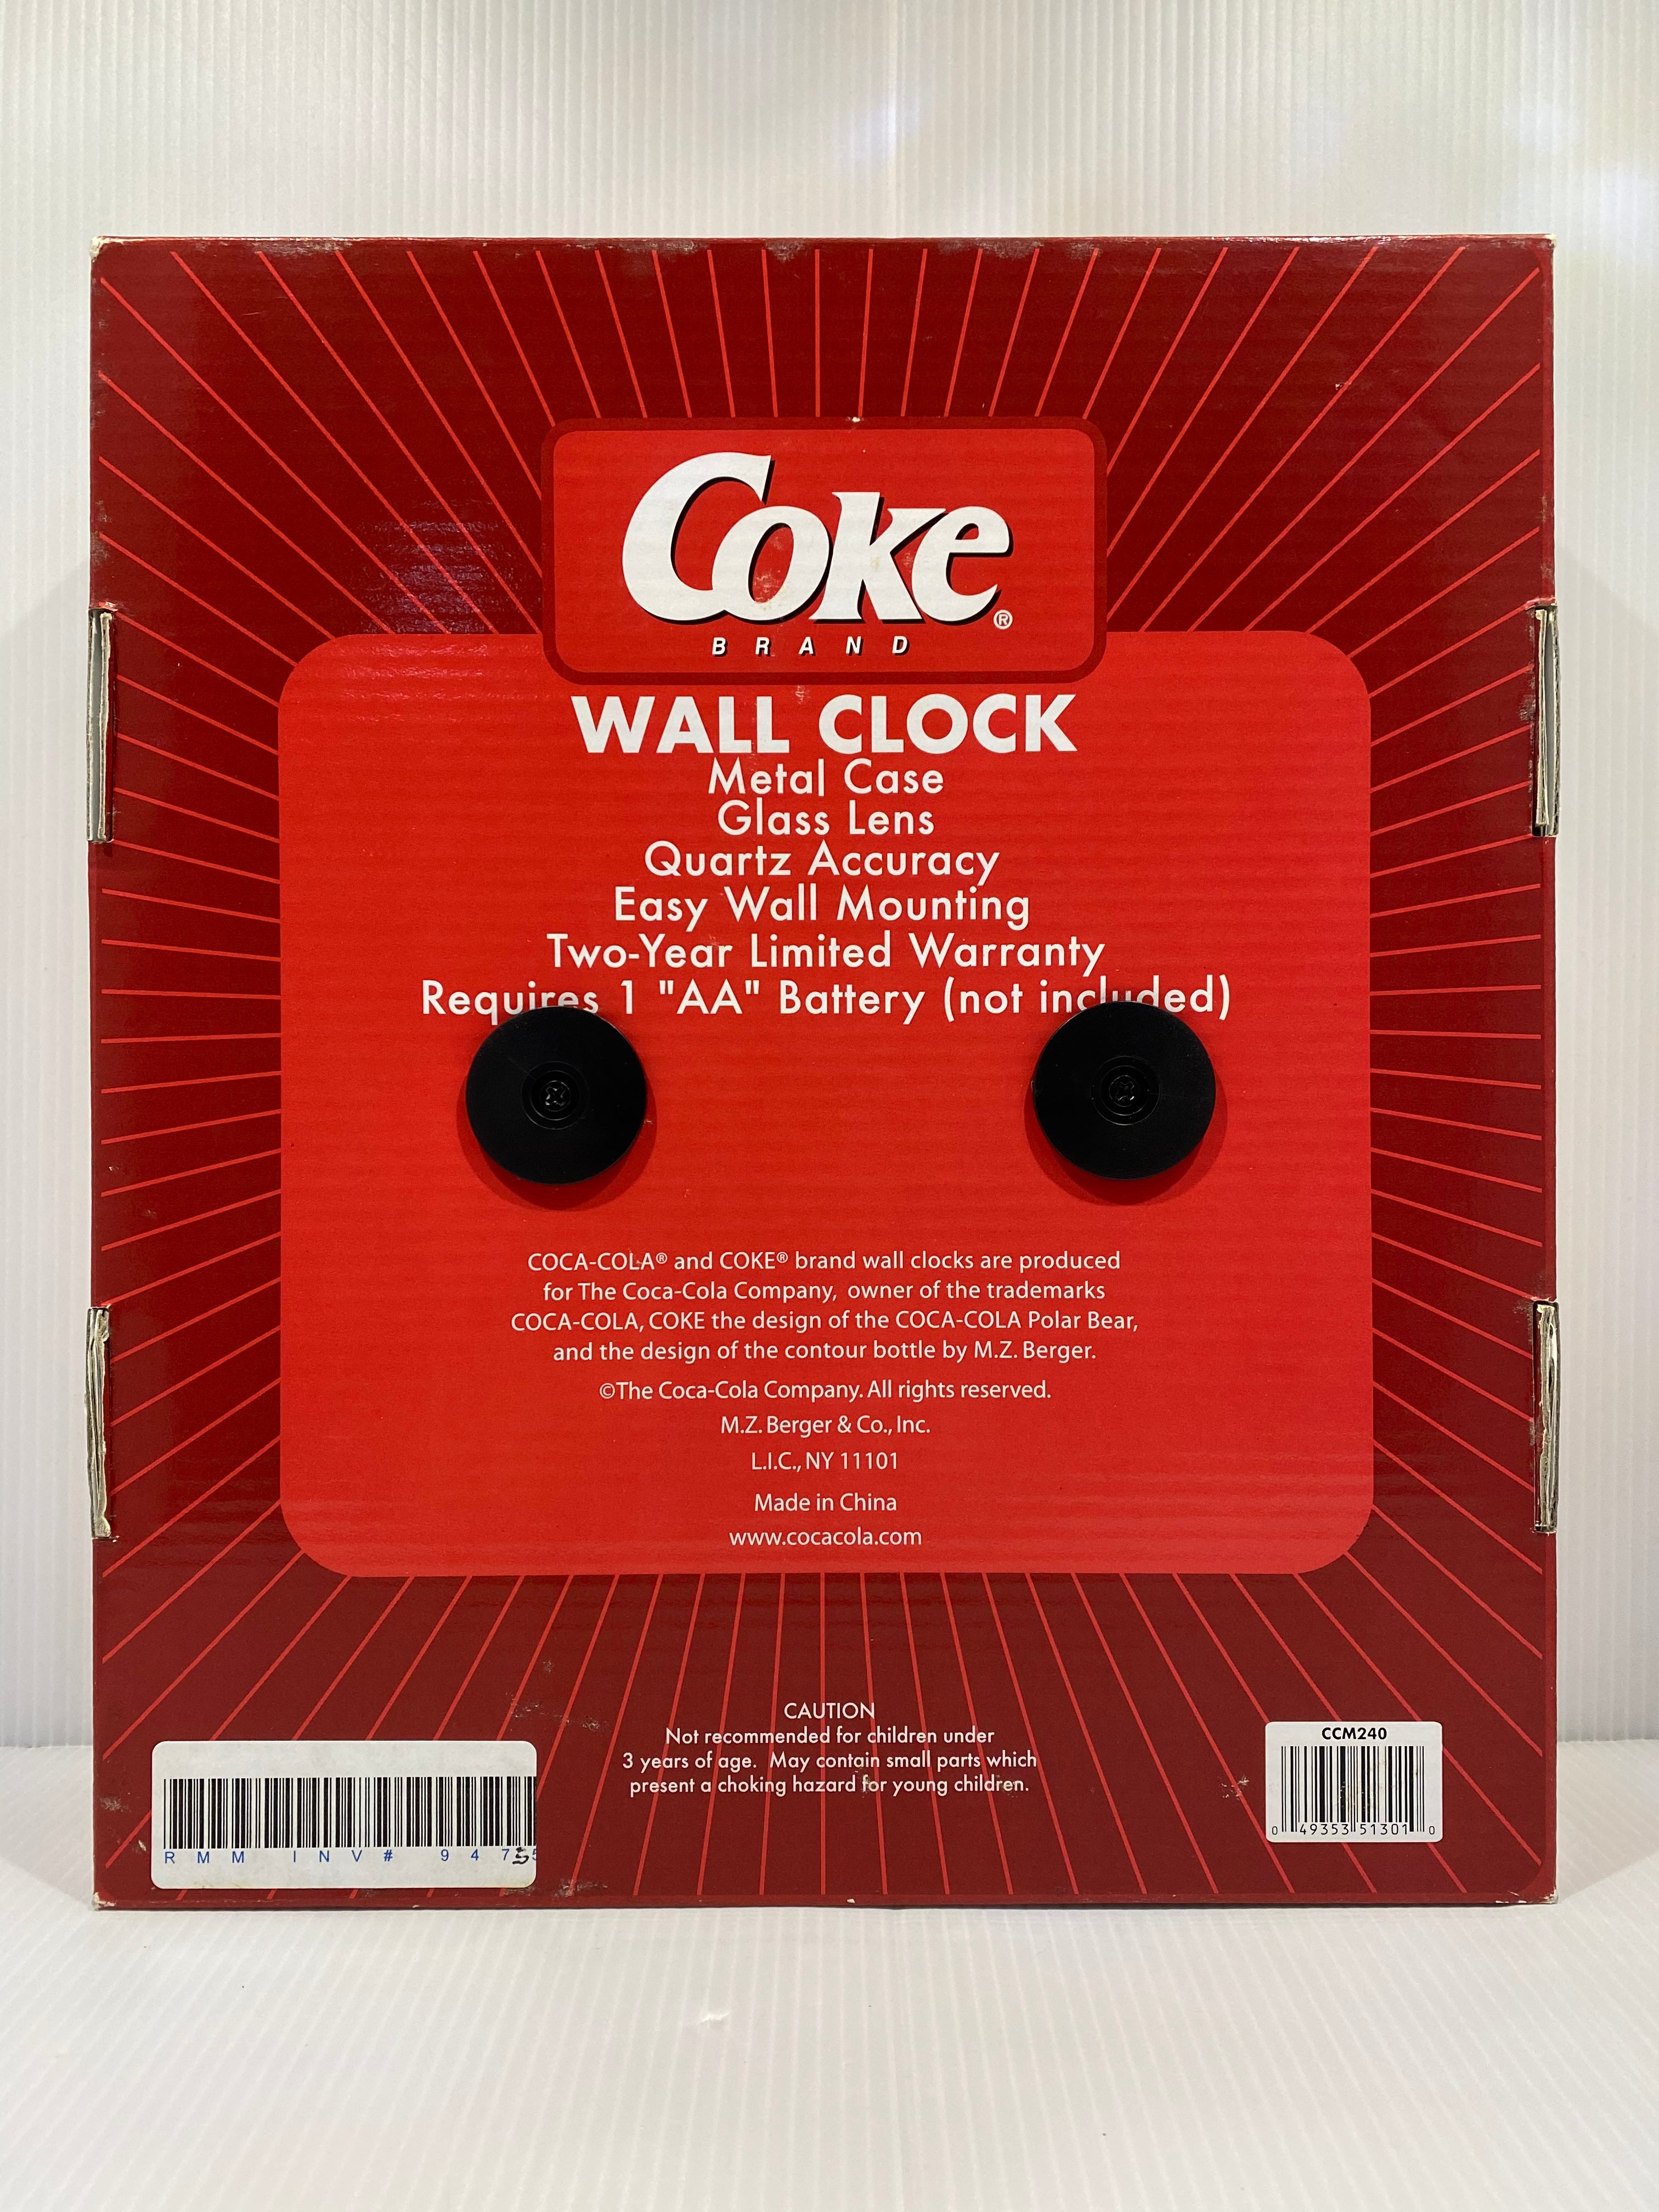 Coca-Cola Wall Clock Red Coke